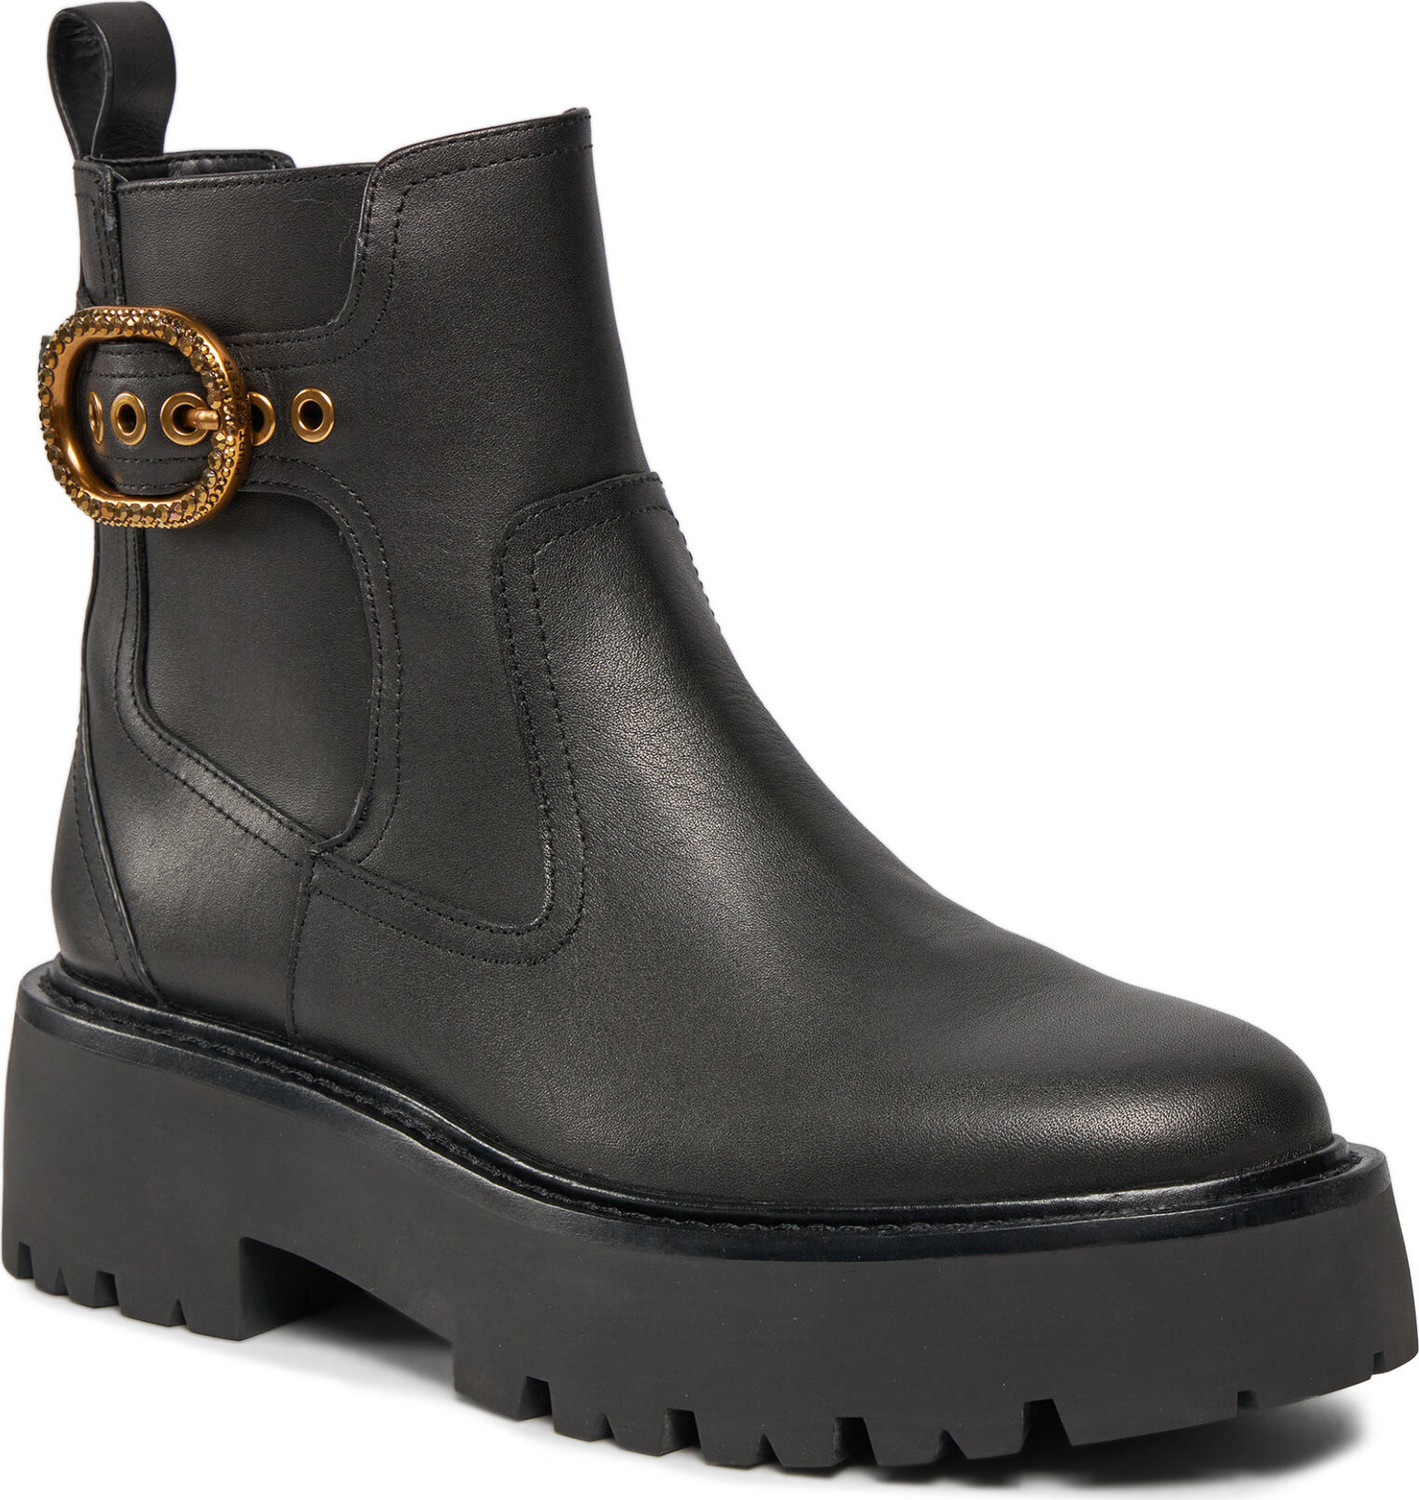 Kotníková obuv s elastickým prvkem Kurt Geiger 225-Mayfair Chelsea Boot 625700109 Black